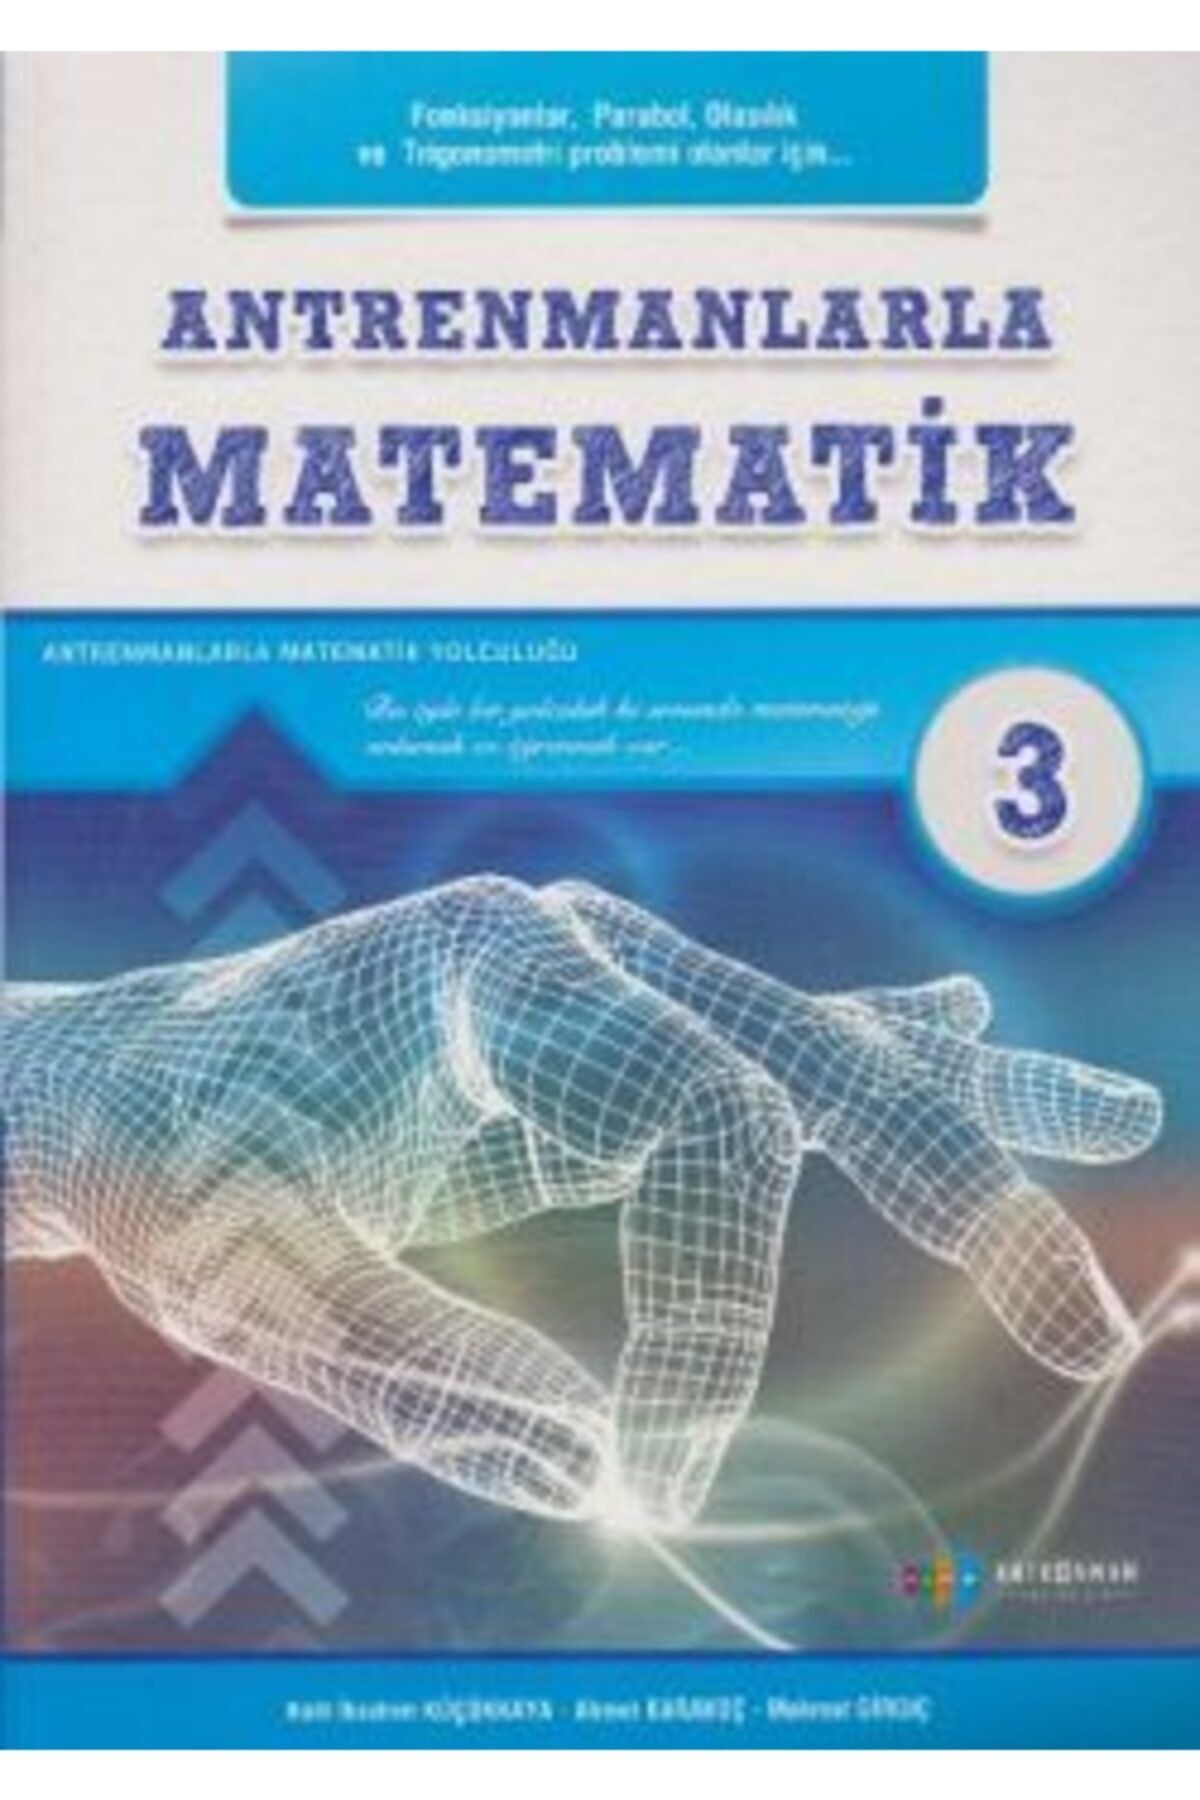 Antrenman Yayınları Antrenmanlarla Matematik 3